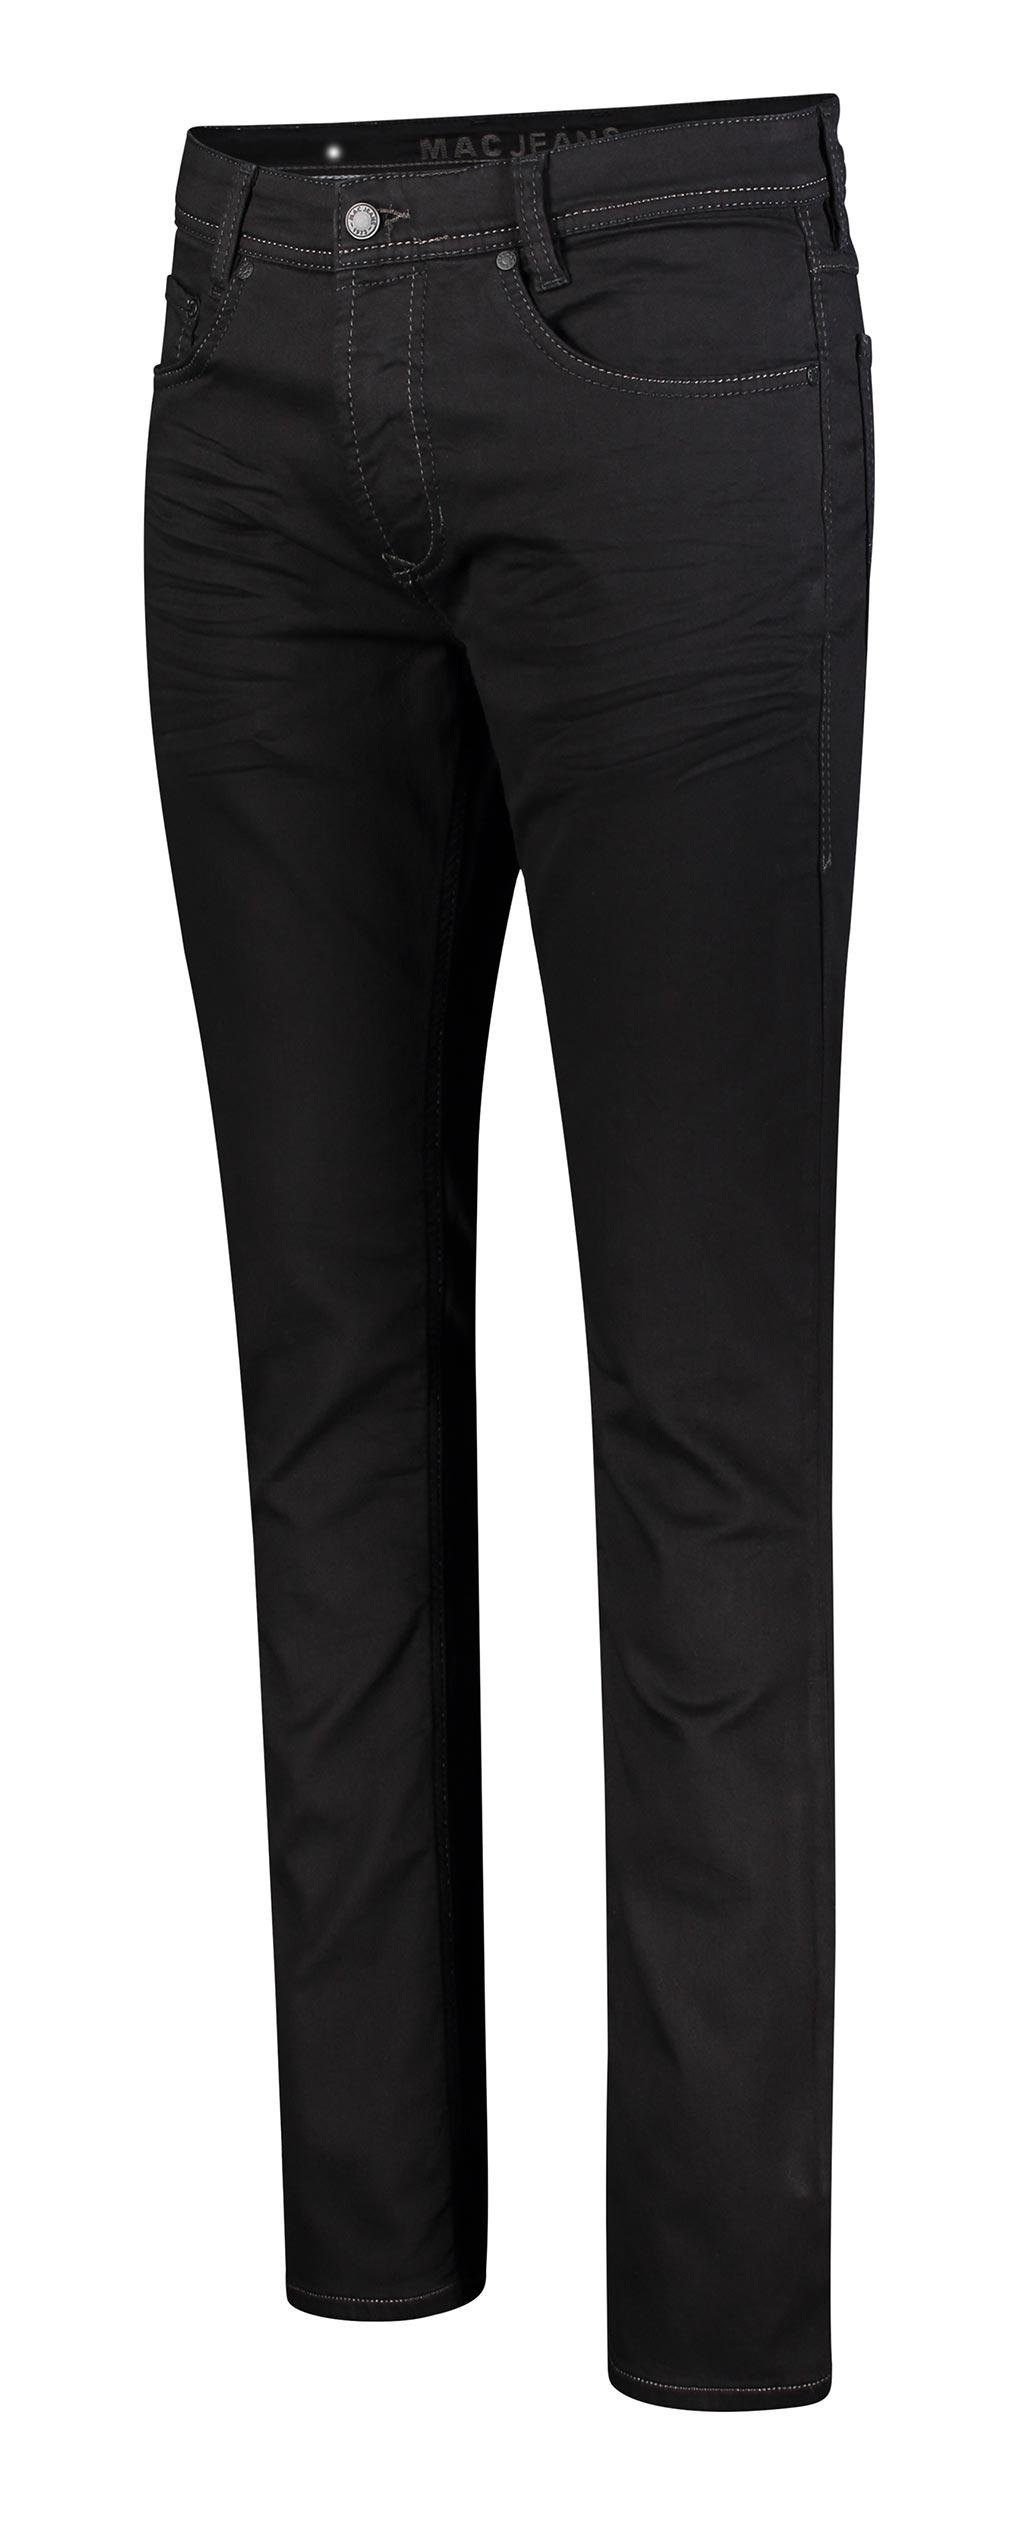 JOG'N black 5-Pocket-Jeans JEANS MAC H896 black clean MAC